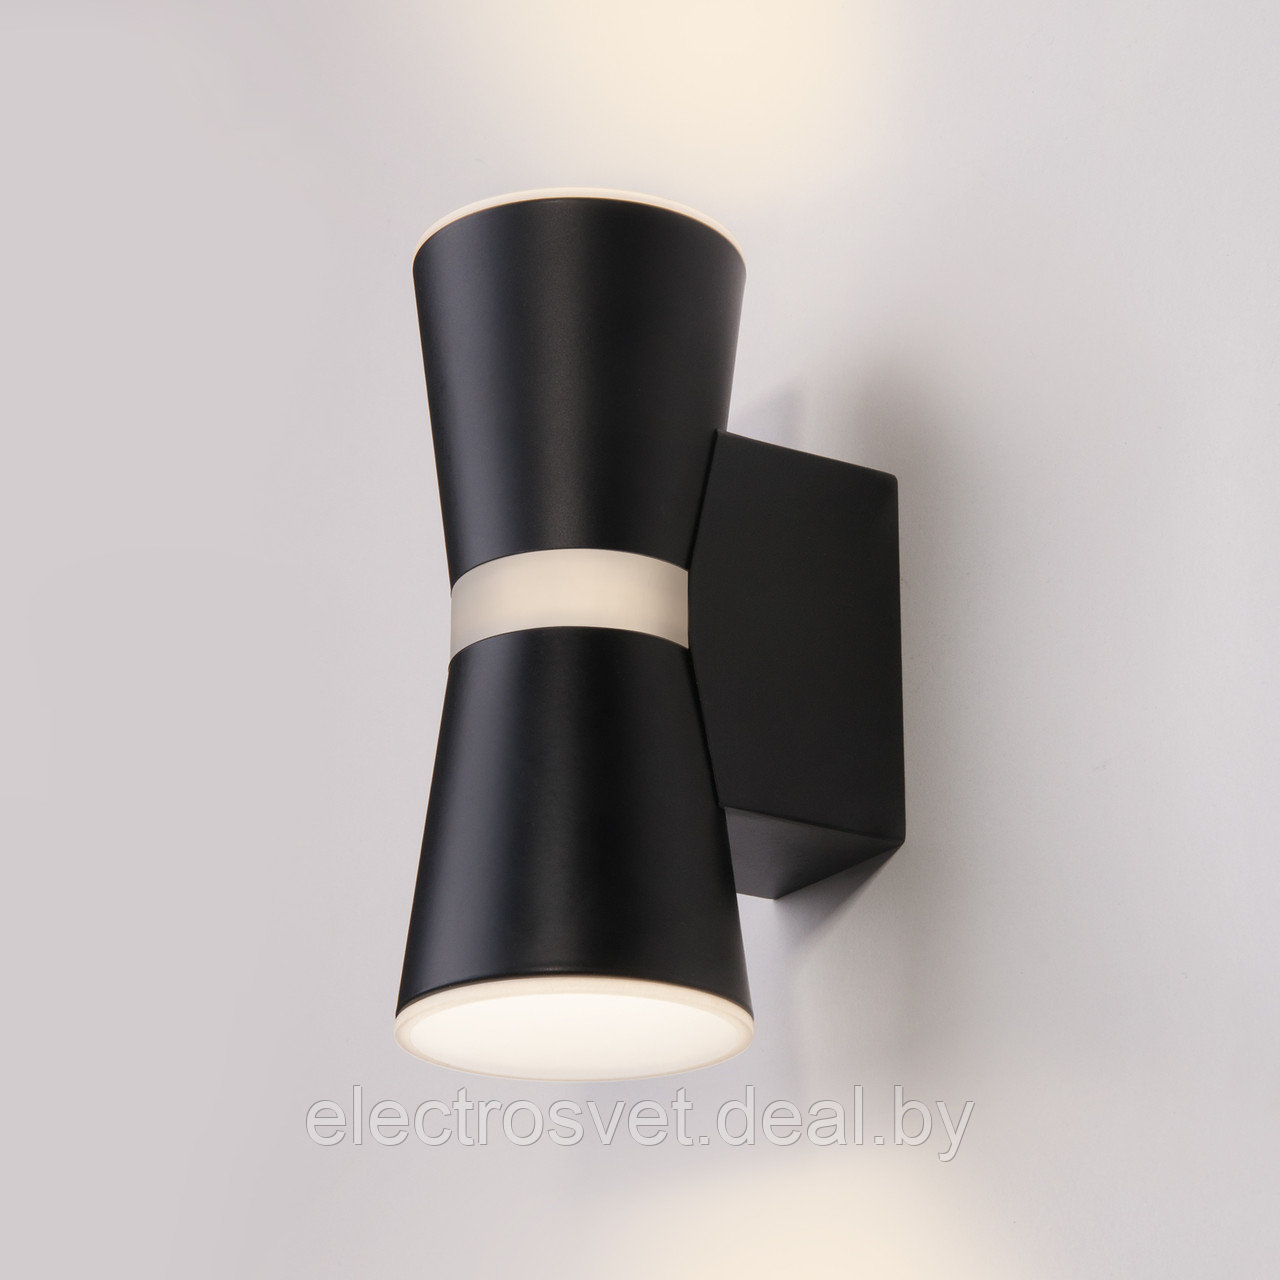 Viare LED черный настенный светодиодный светильник